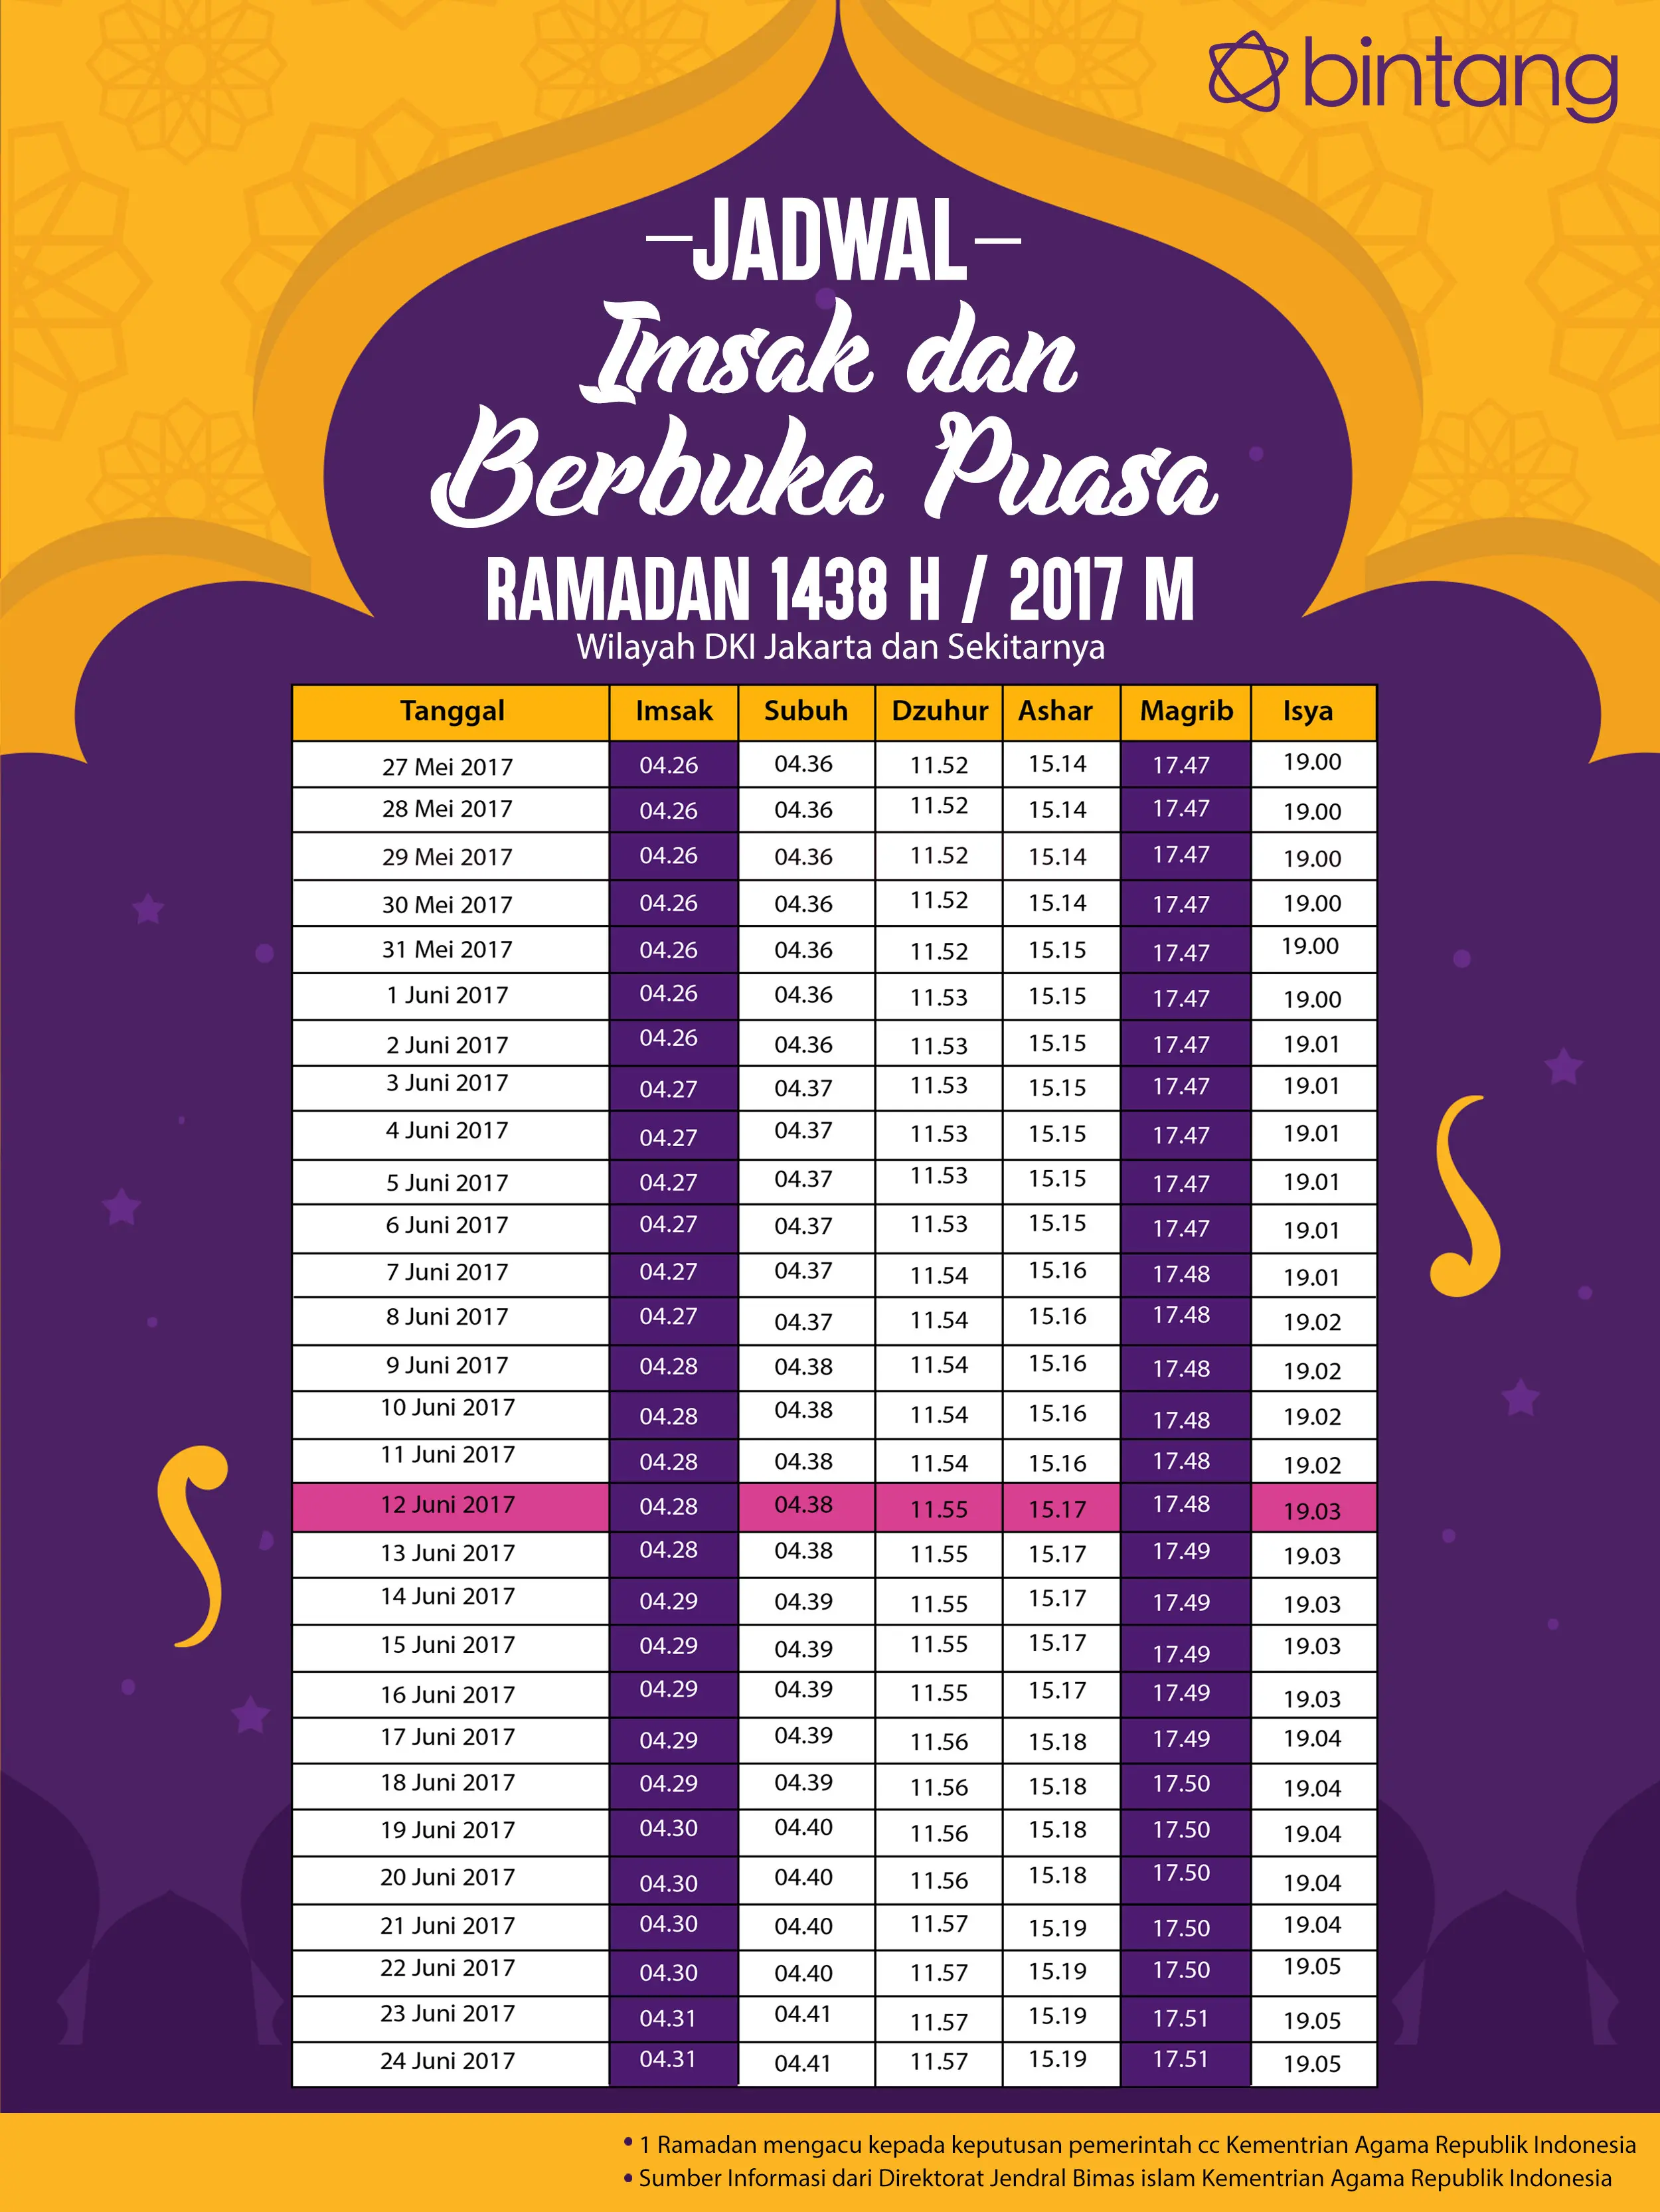 Berikut jadwal buka puasa hari ke-17, 12 Juni 2017. (Digital Imaging: Muhammad Iqbal nurfajri/Bintang.com)